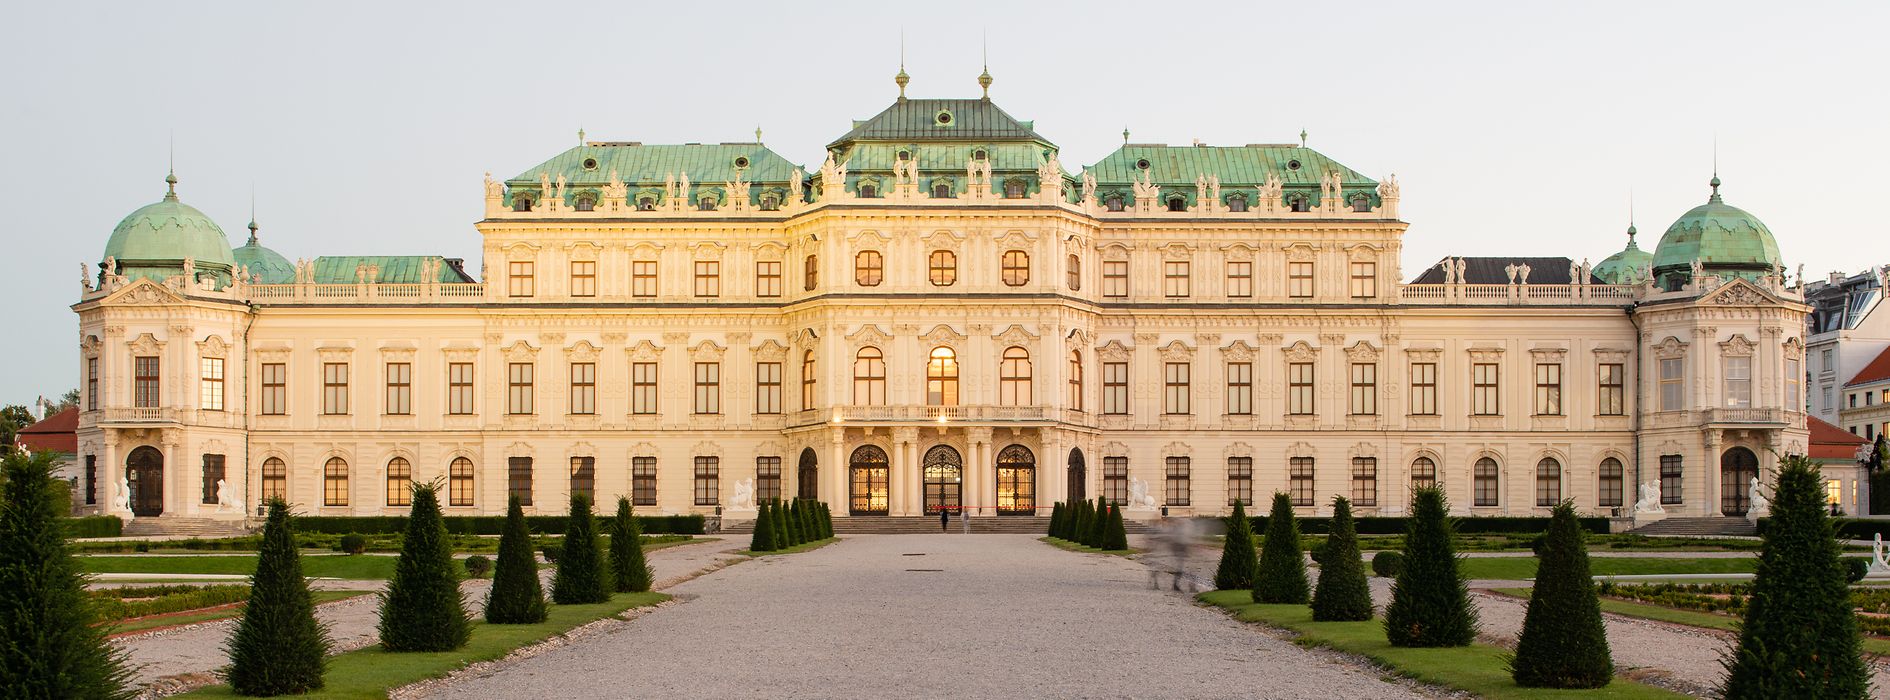 Palais du Belvédère, Vienne